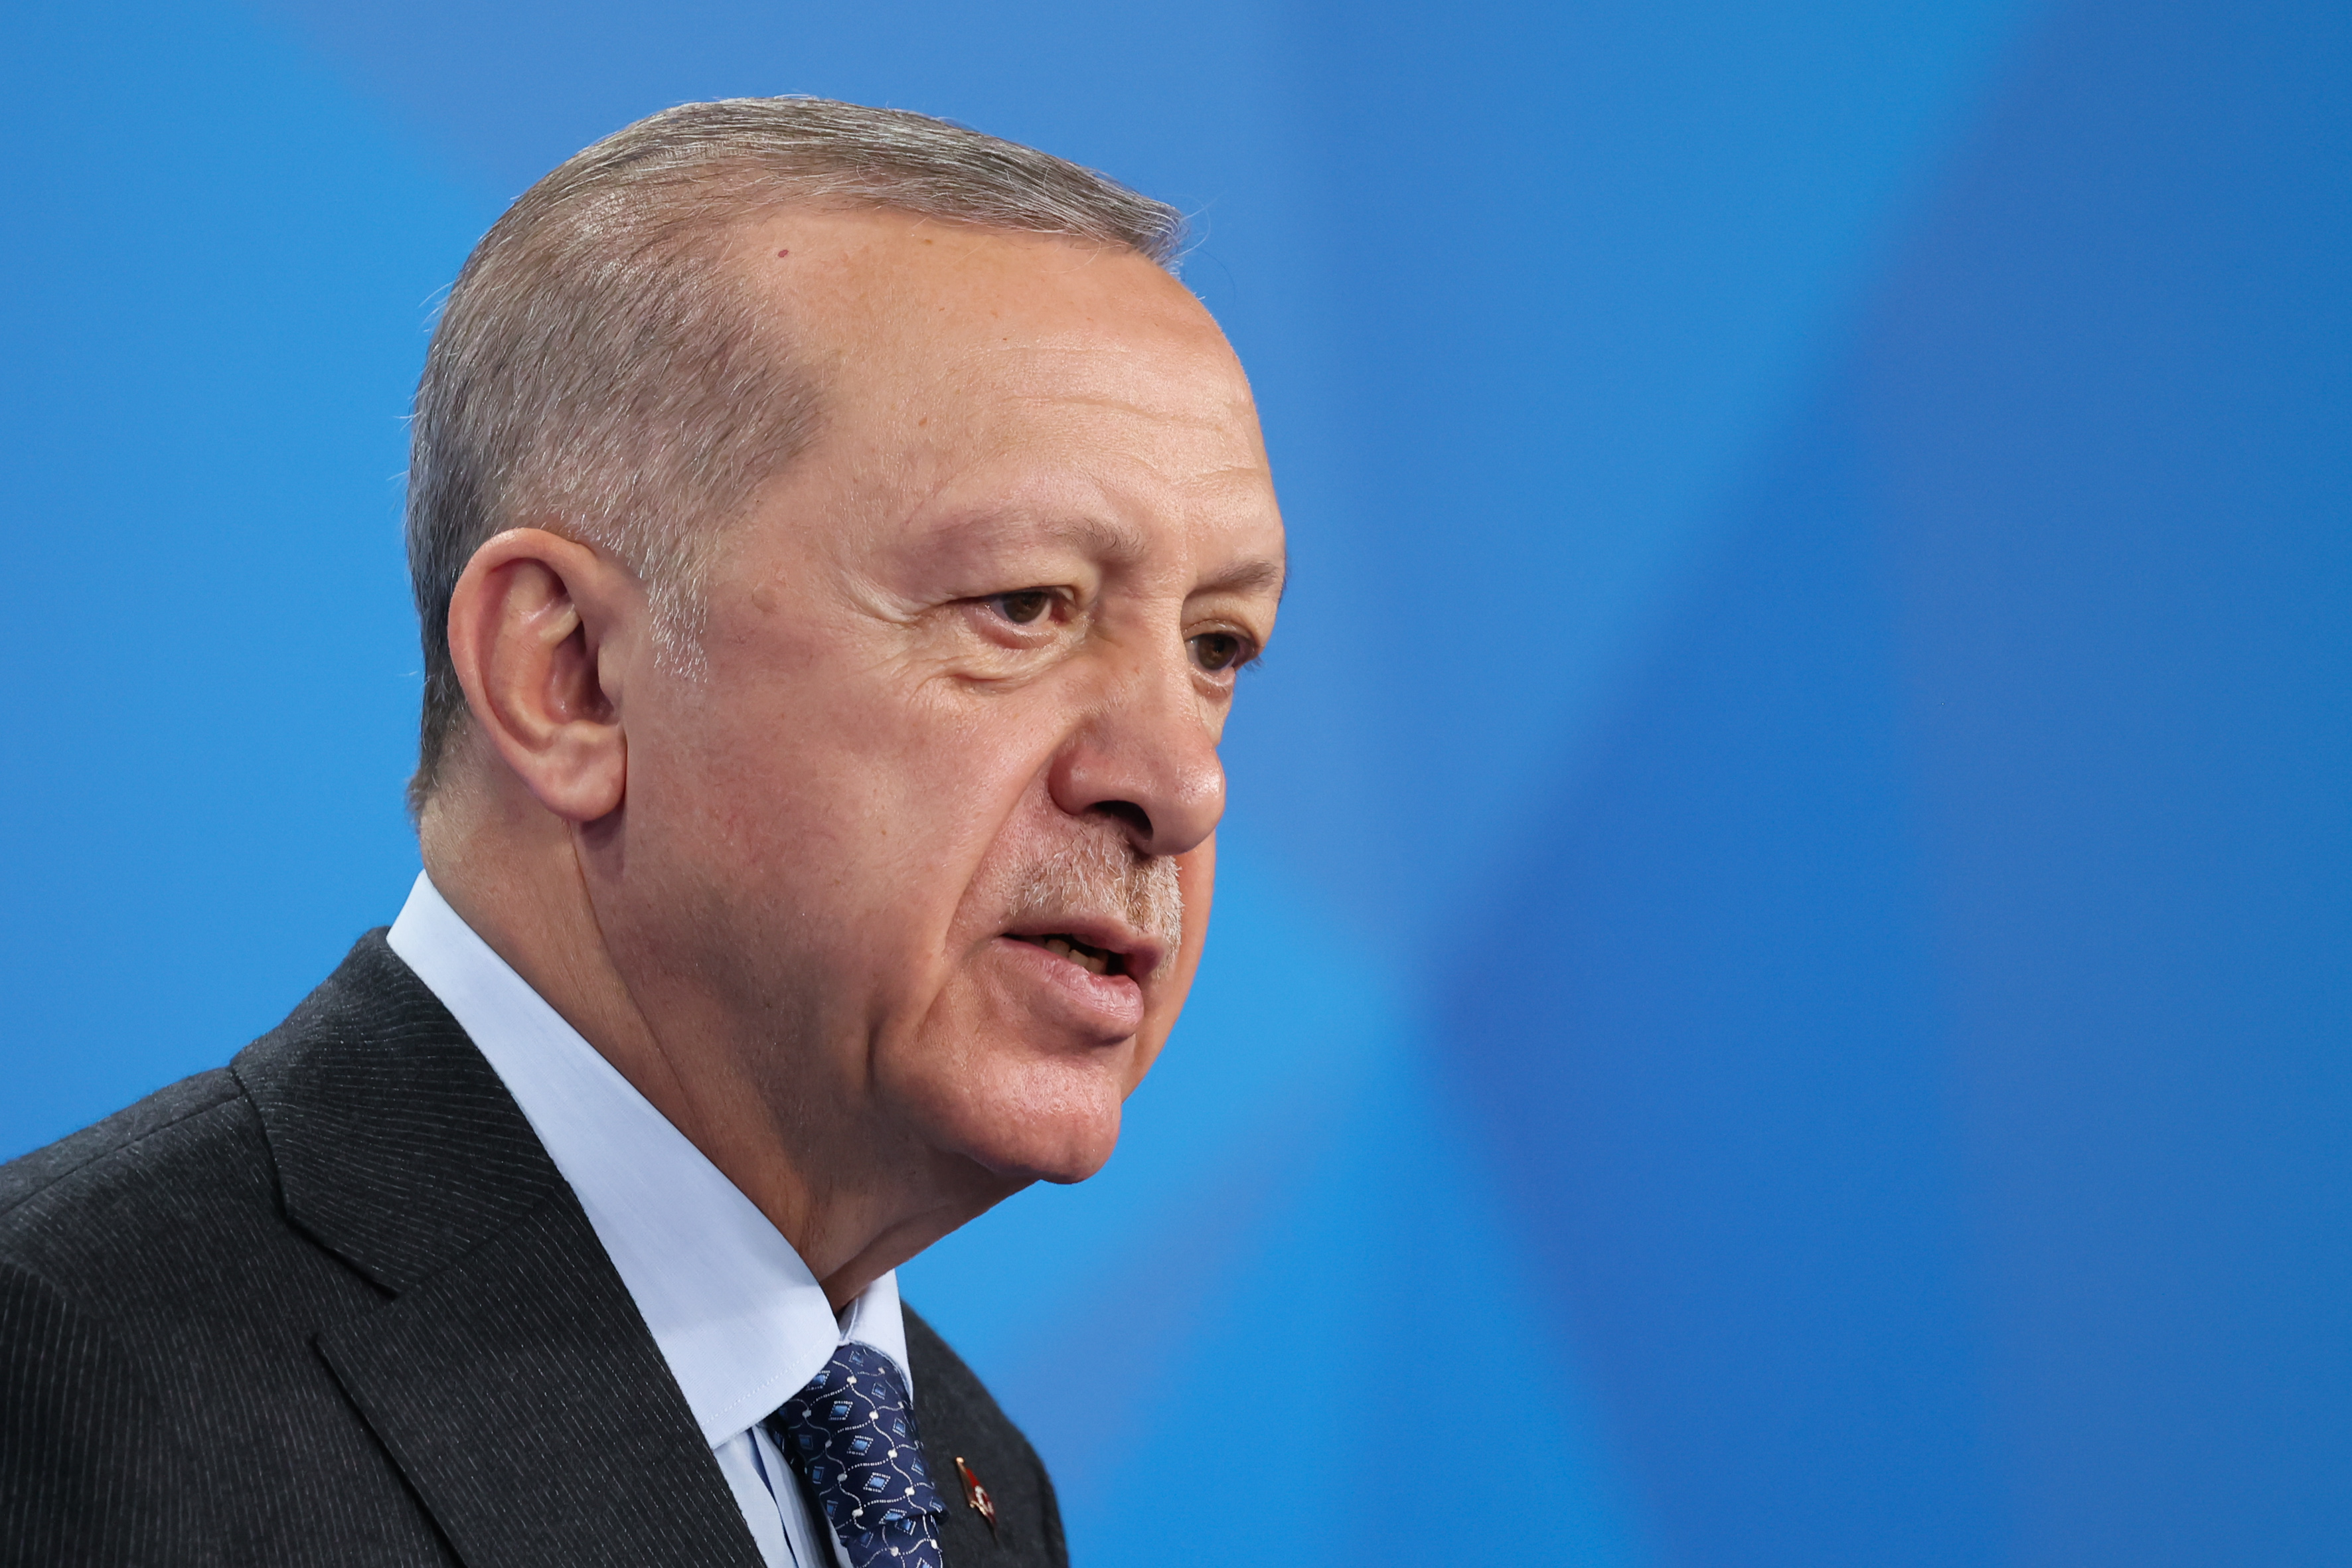 Erdogan: In swap with Ukraine, prisoner demanded by Putin gets released 